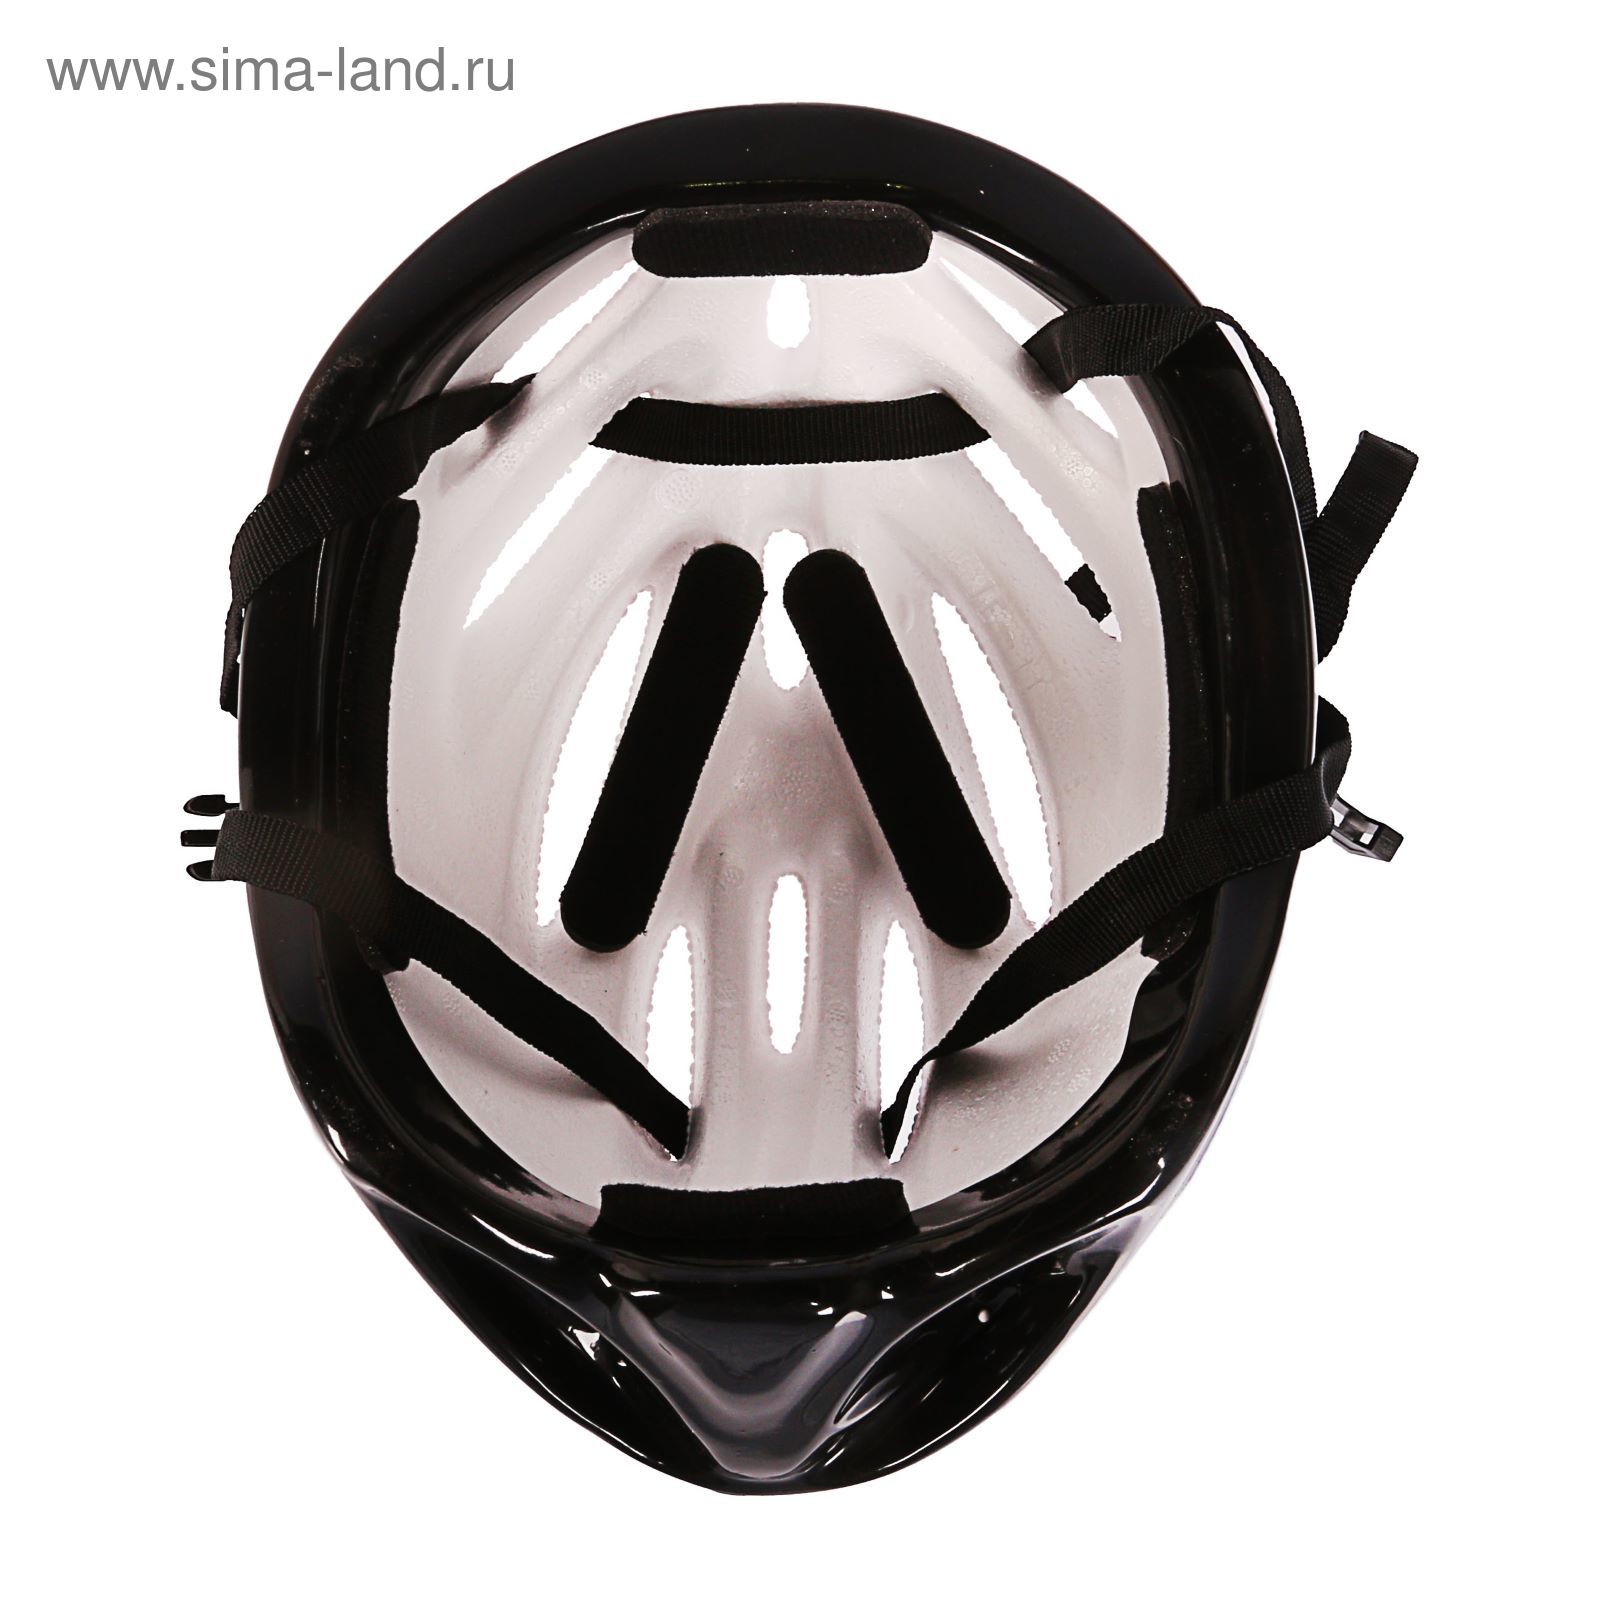 Шлем велосипедиста взрослый ОТ-11, размер L (56-58 см), цвет: сиренево-черный